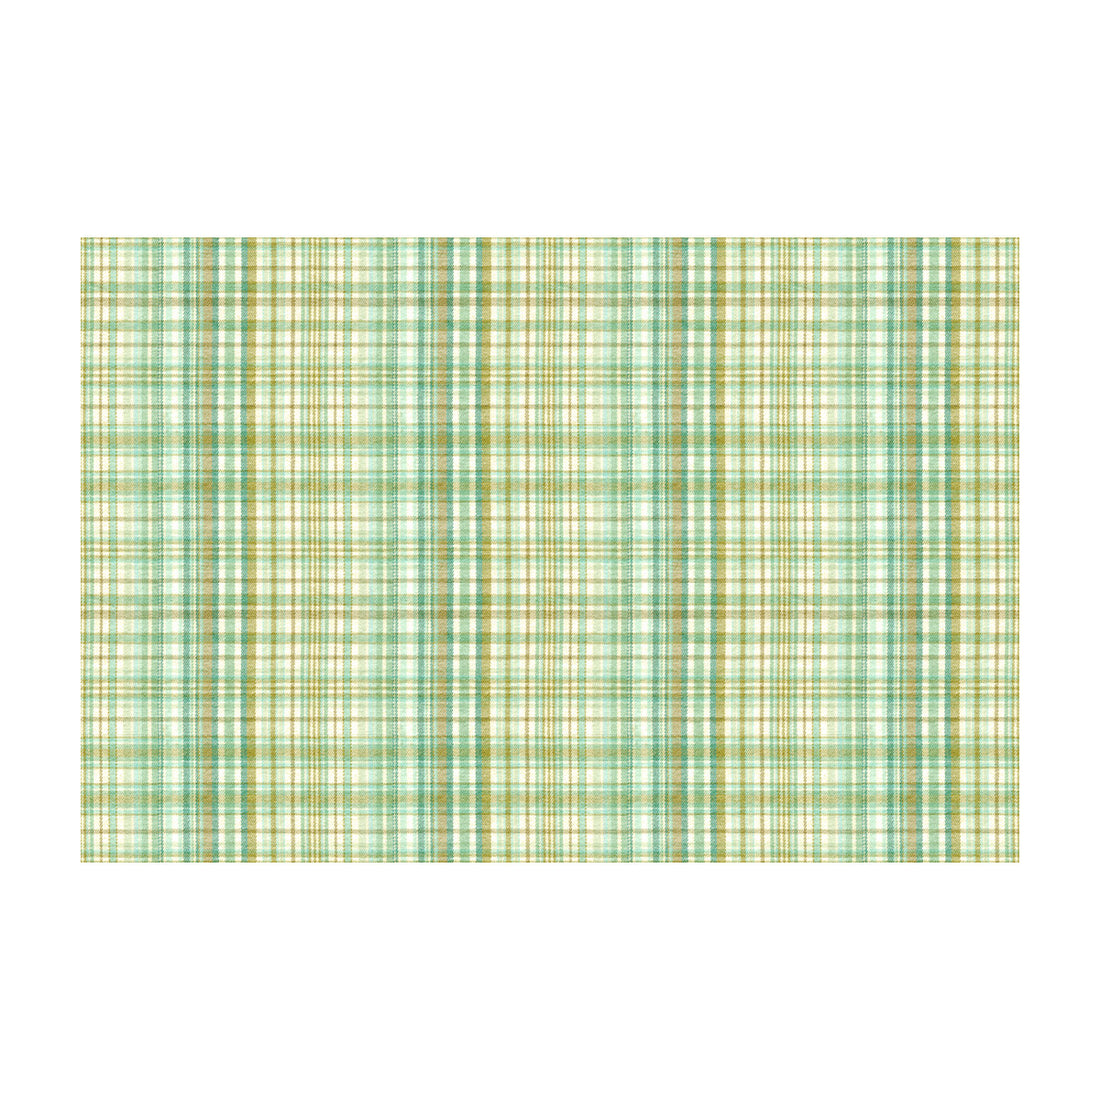 Kravet Basics fabric in 30889-1635 color - pattern 30889.1635.0 - by Kravet Basics in the Kravet Colors collection